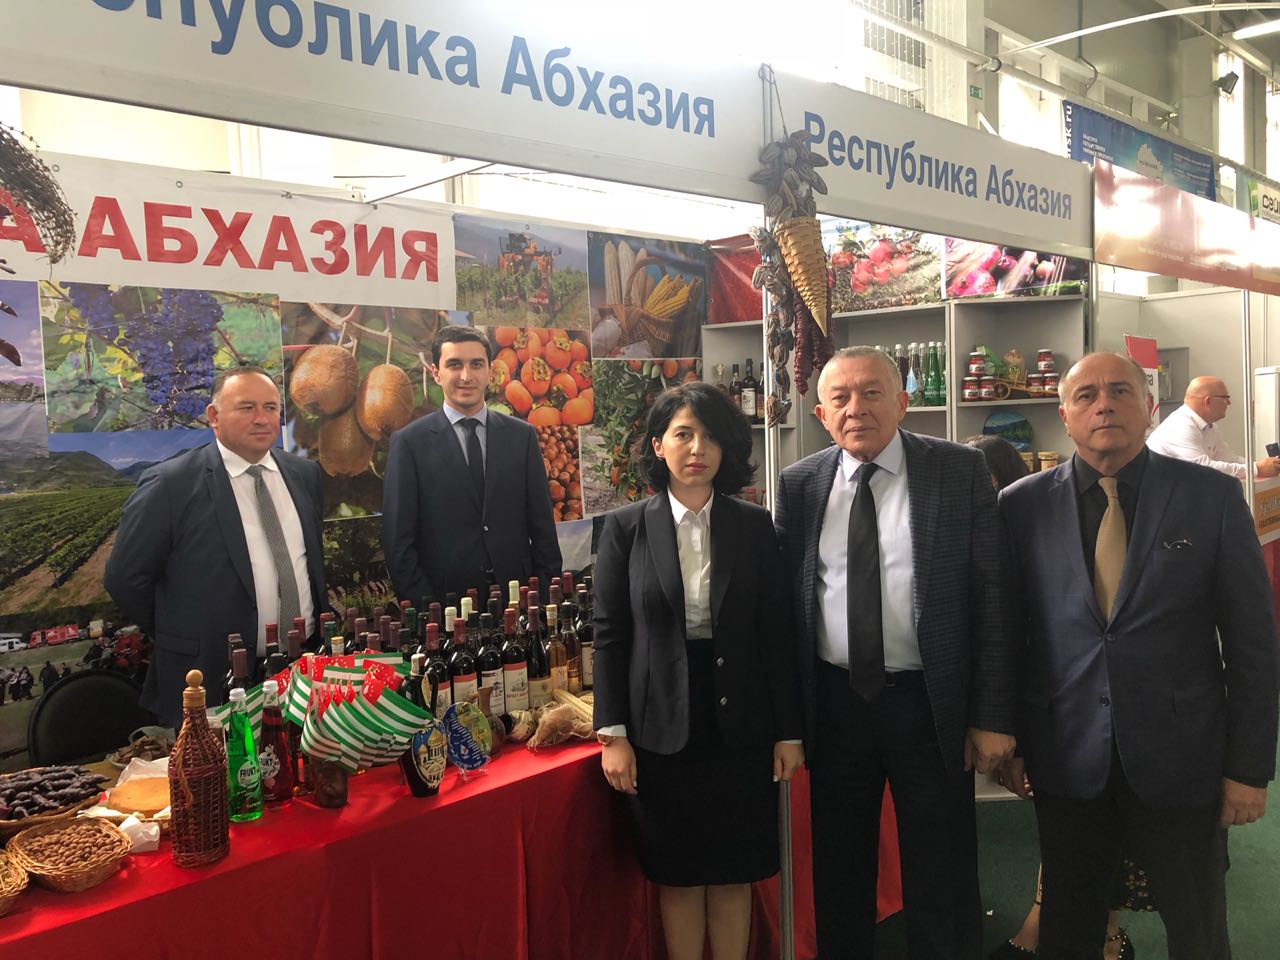 مشاركة غرفة تجارة و صناعة جمهورية أبخازيا في معرض " كورسكي كارينسكي يارماركا " 2018 .